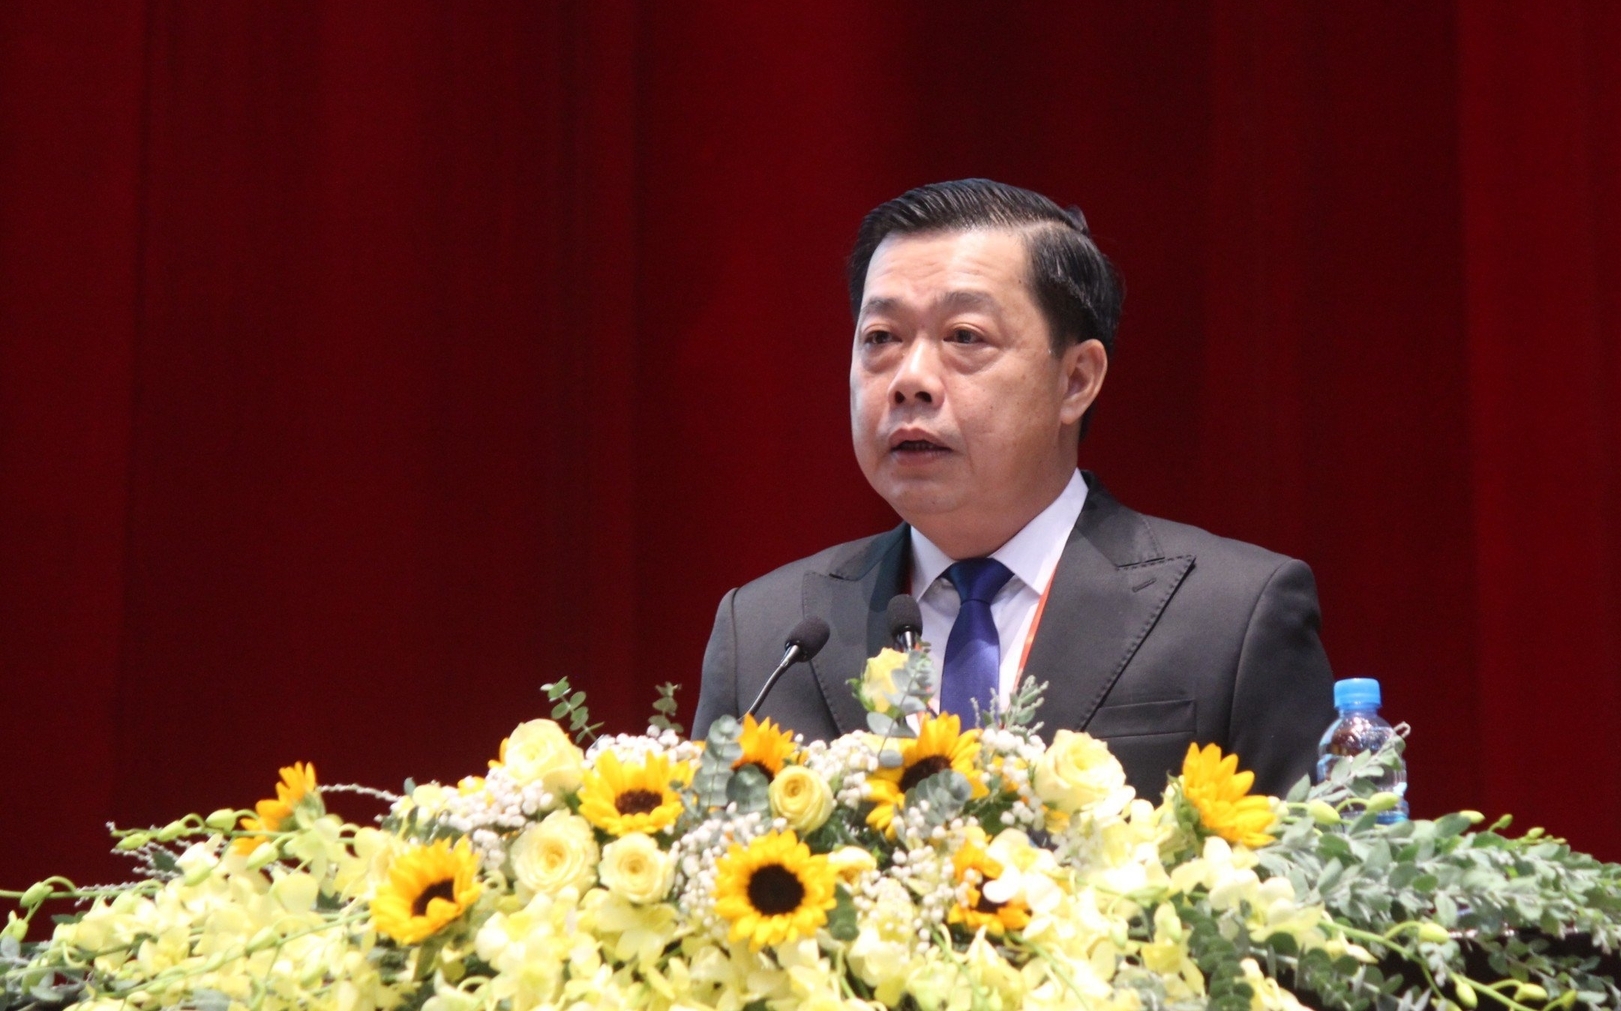 Ông Đỗ Ngọc Huy, Chủ tịch Hội Nông dân tỉnh Bình Dương phát biểu tại Đại hội. Ảnh: Trần Trung.